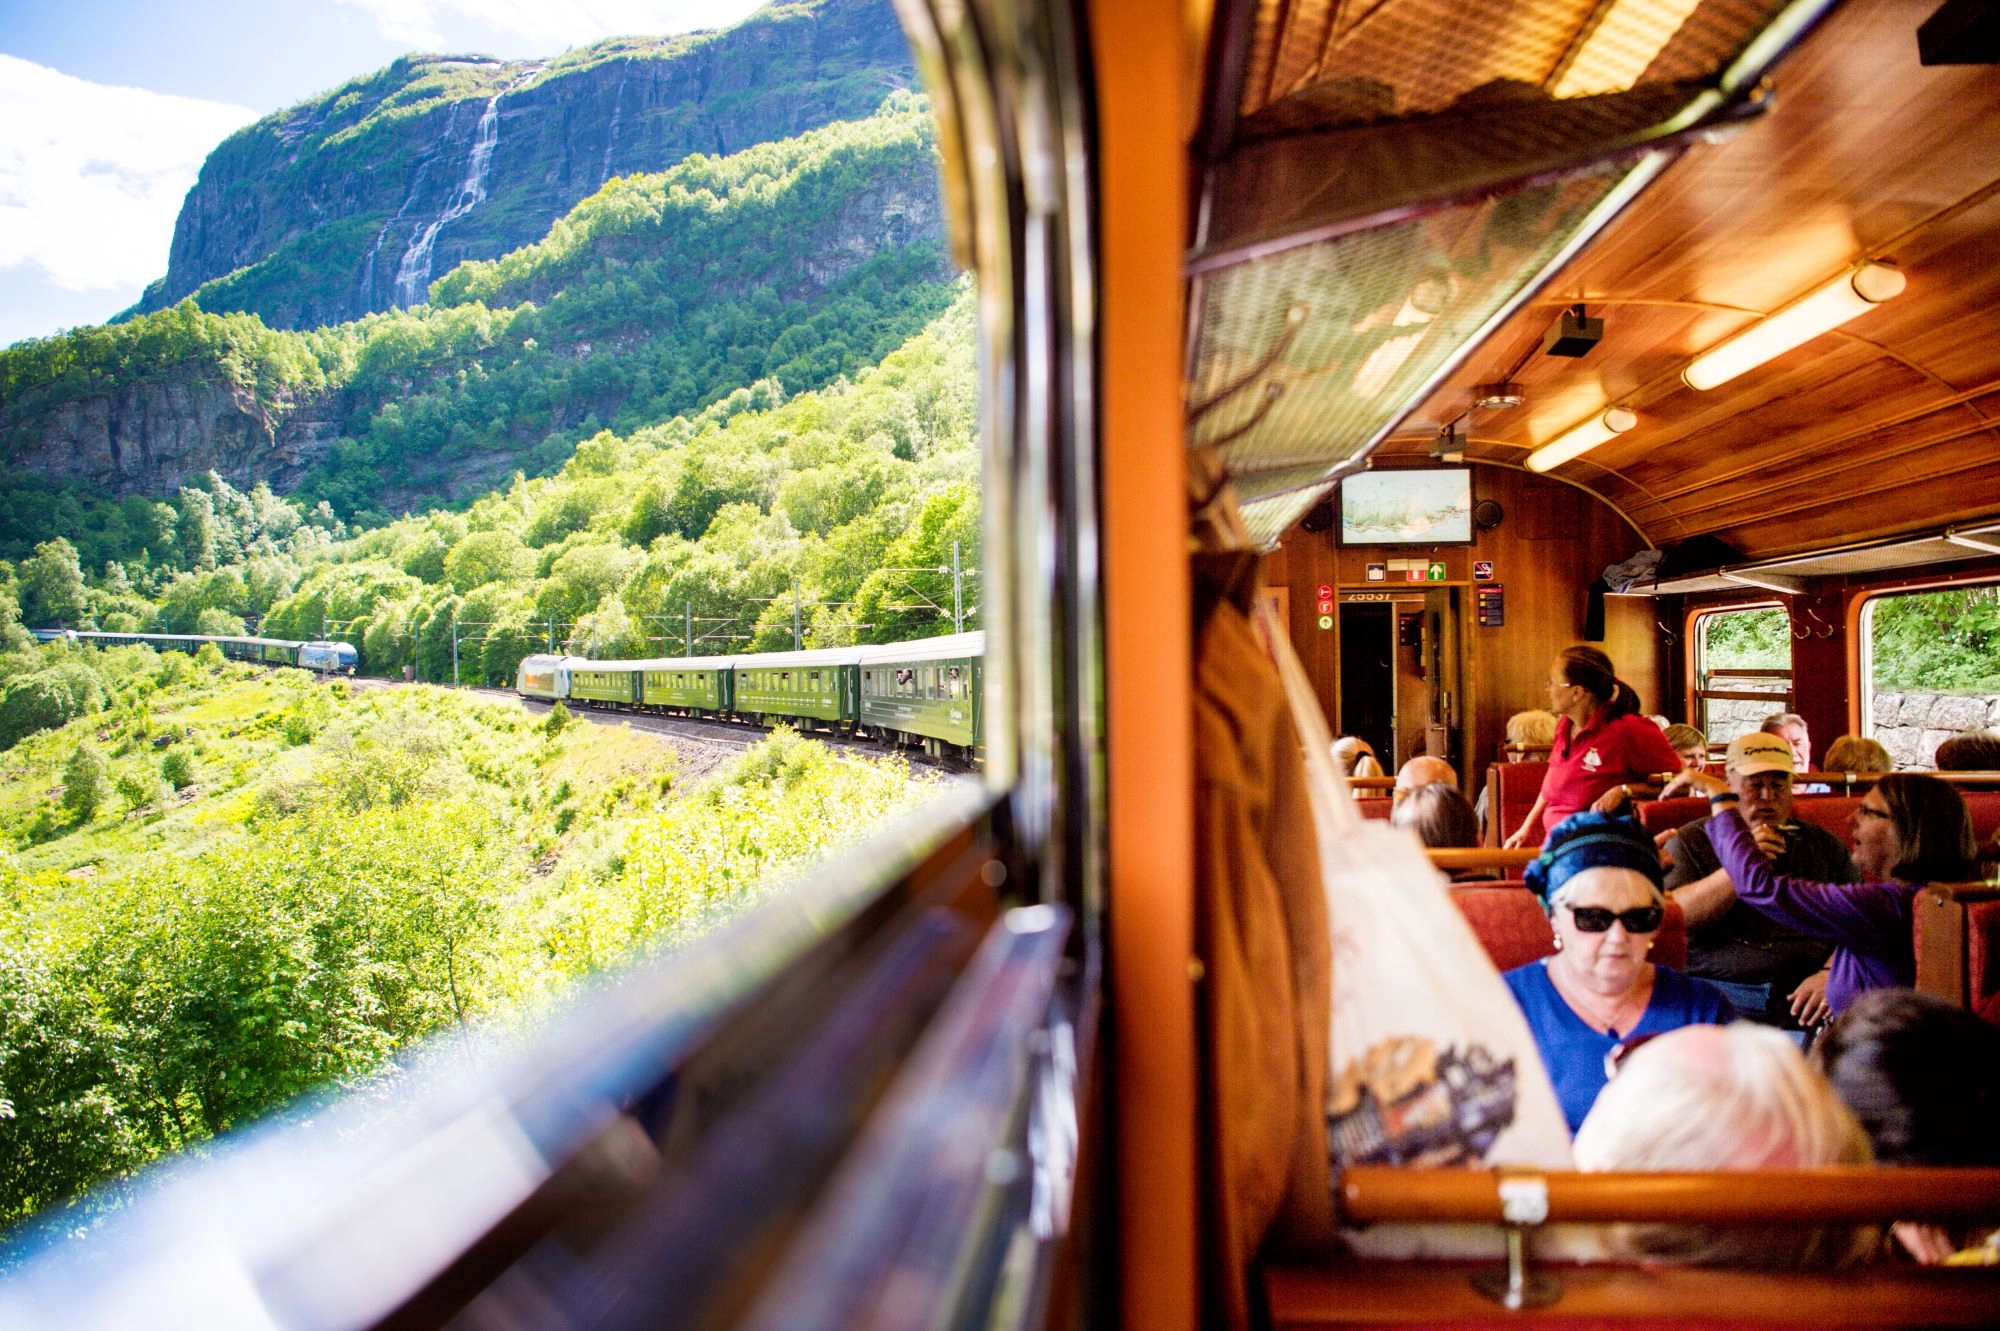 People on the Flåm Railway - Norway